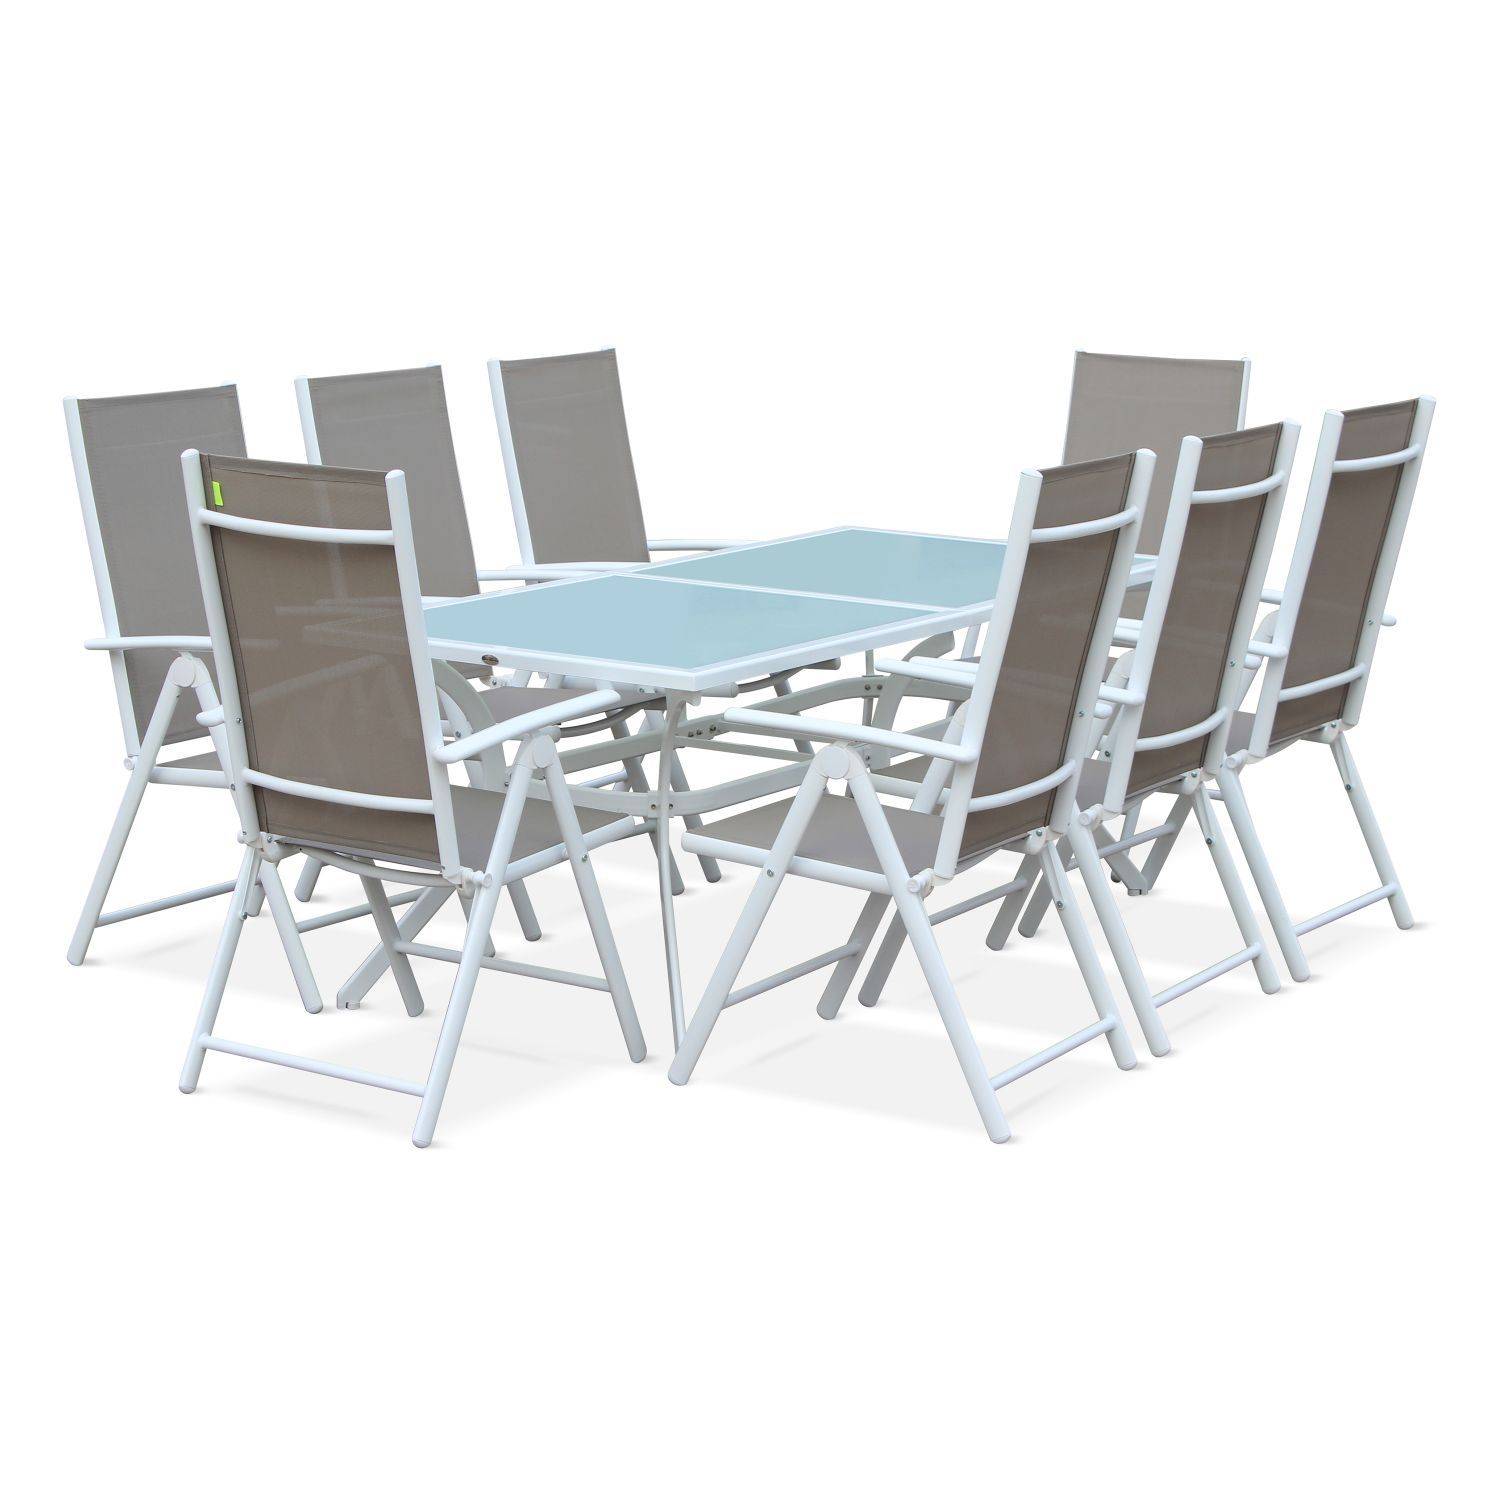 Gartengarnitur aus Aluminium und Textilene - Naevia - Weiß, Taupe - 8 Plätze - 1 großer rechteckiger Tisch, 8 Klappsessel Photo1